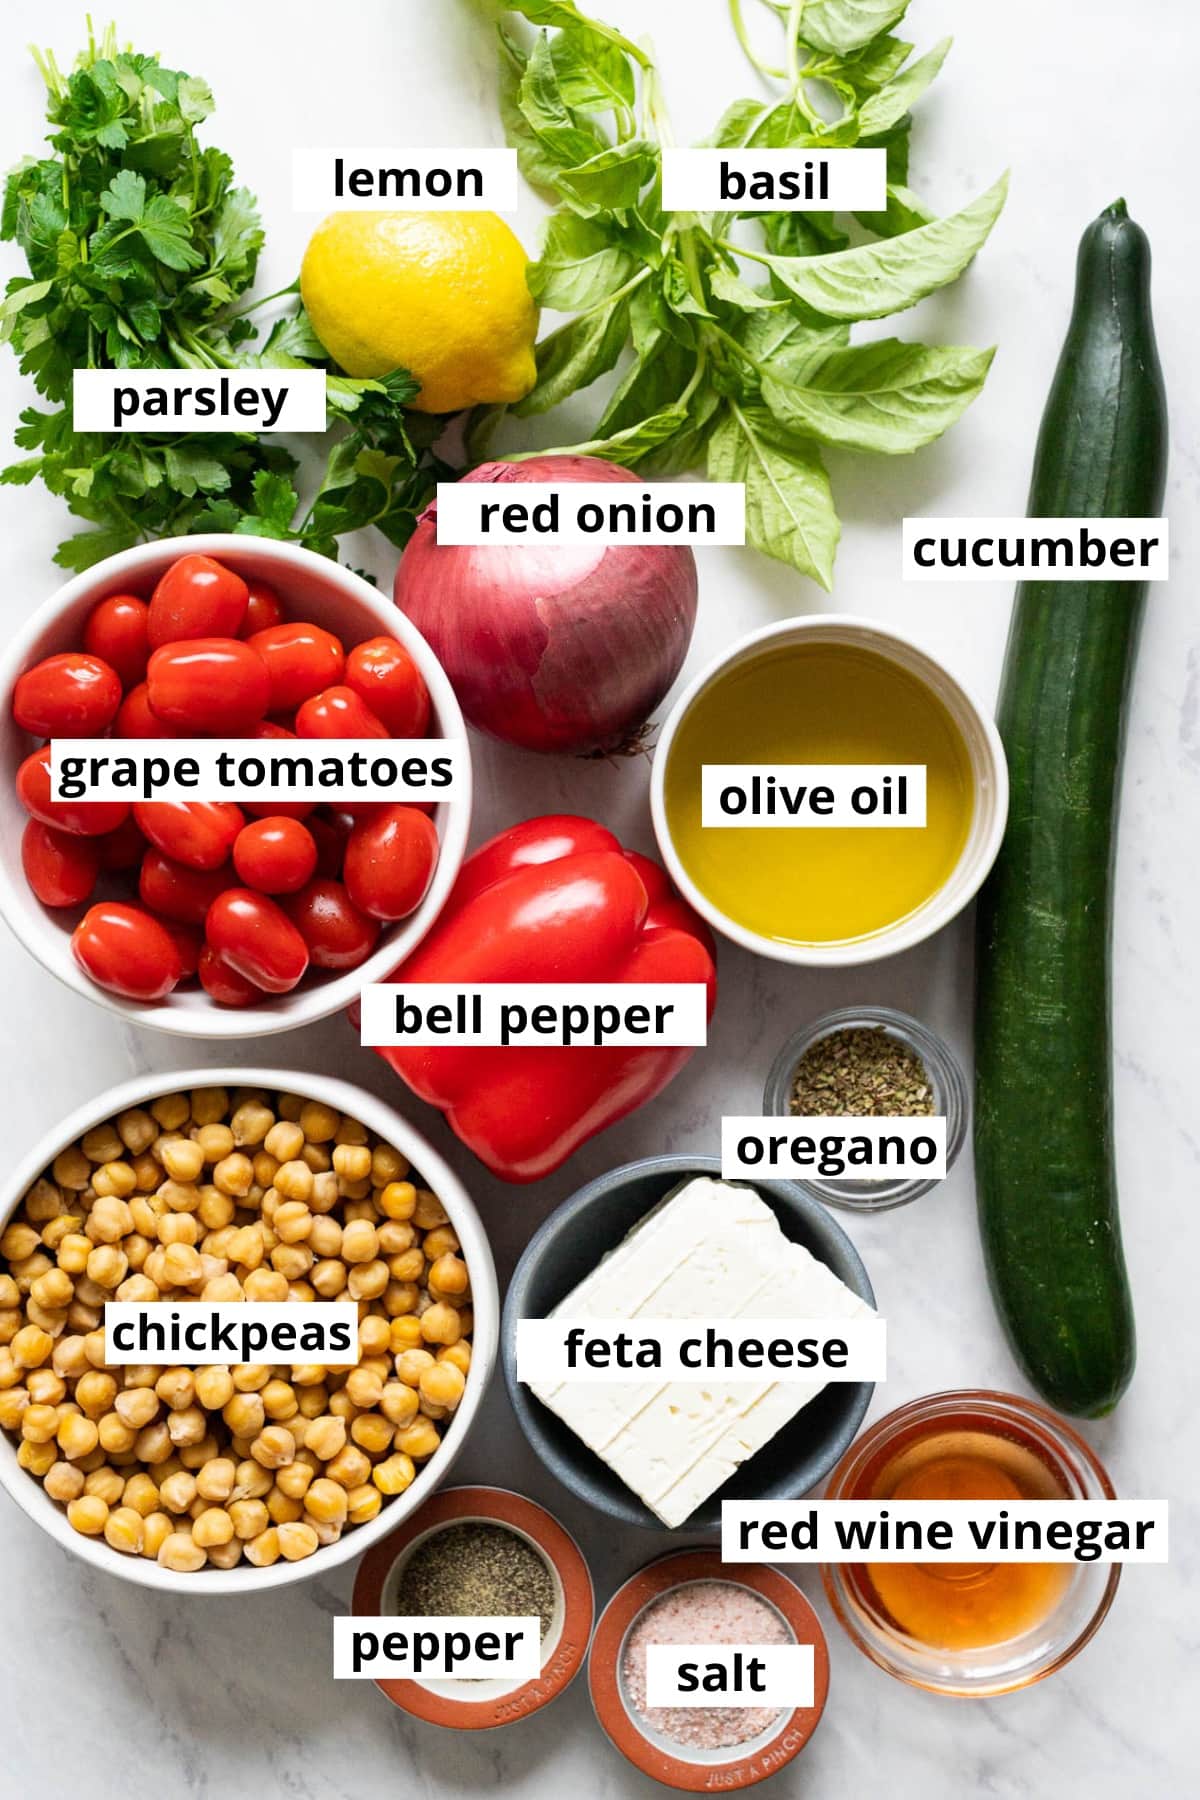 Chickpeas, feta cheese, red wine vinegar, salt, pepper, oregano, cucumber, bell pepper, olive oil, grape tomatoes, red onion, parsley, lemon, basil.